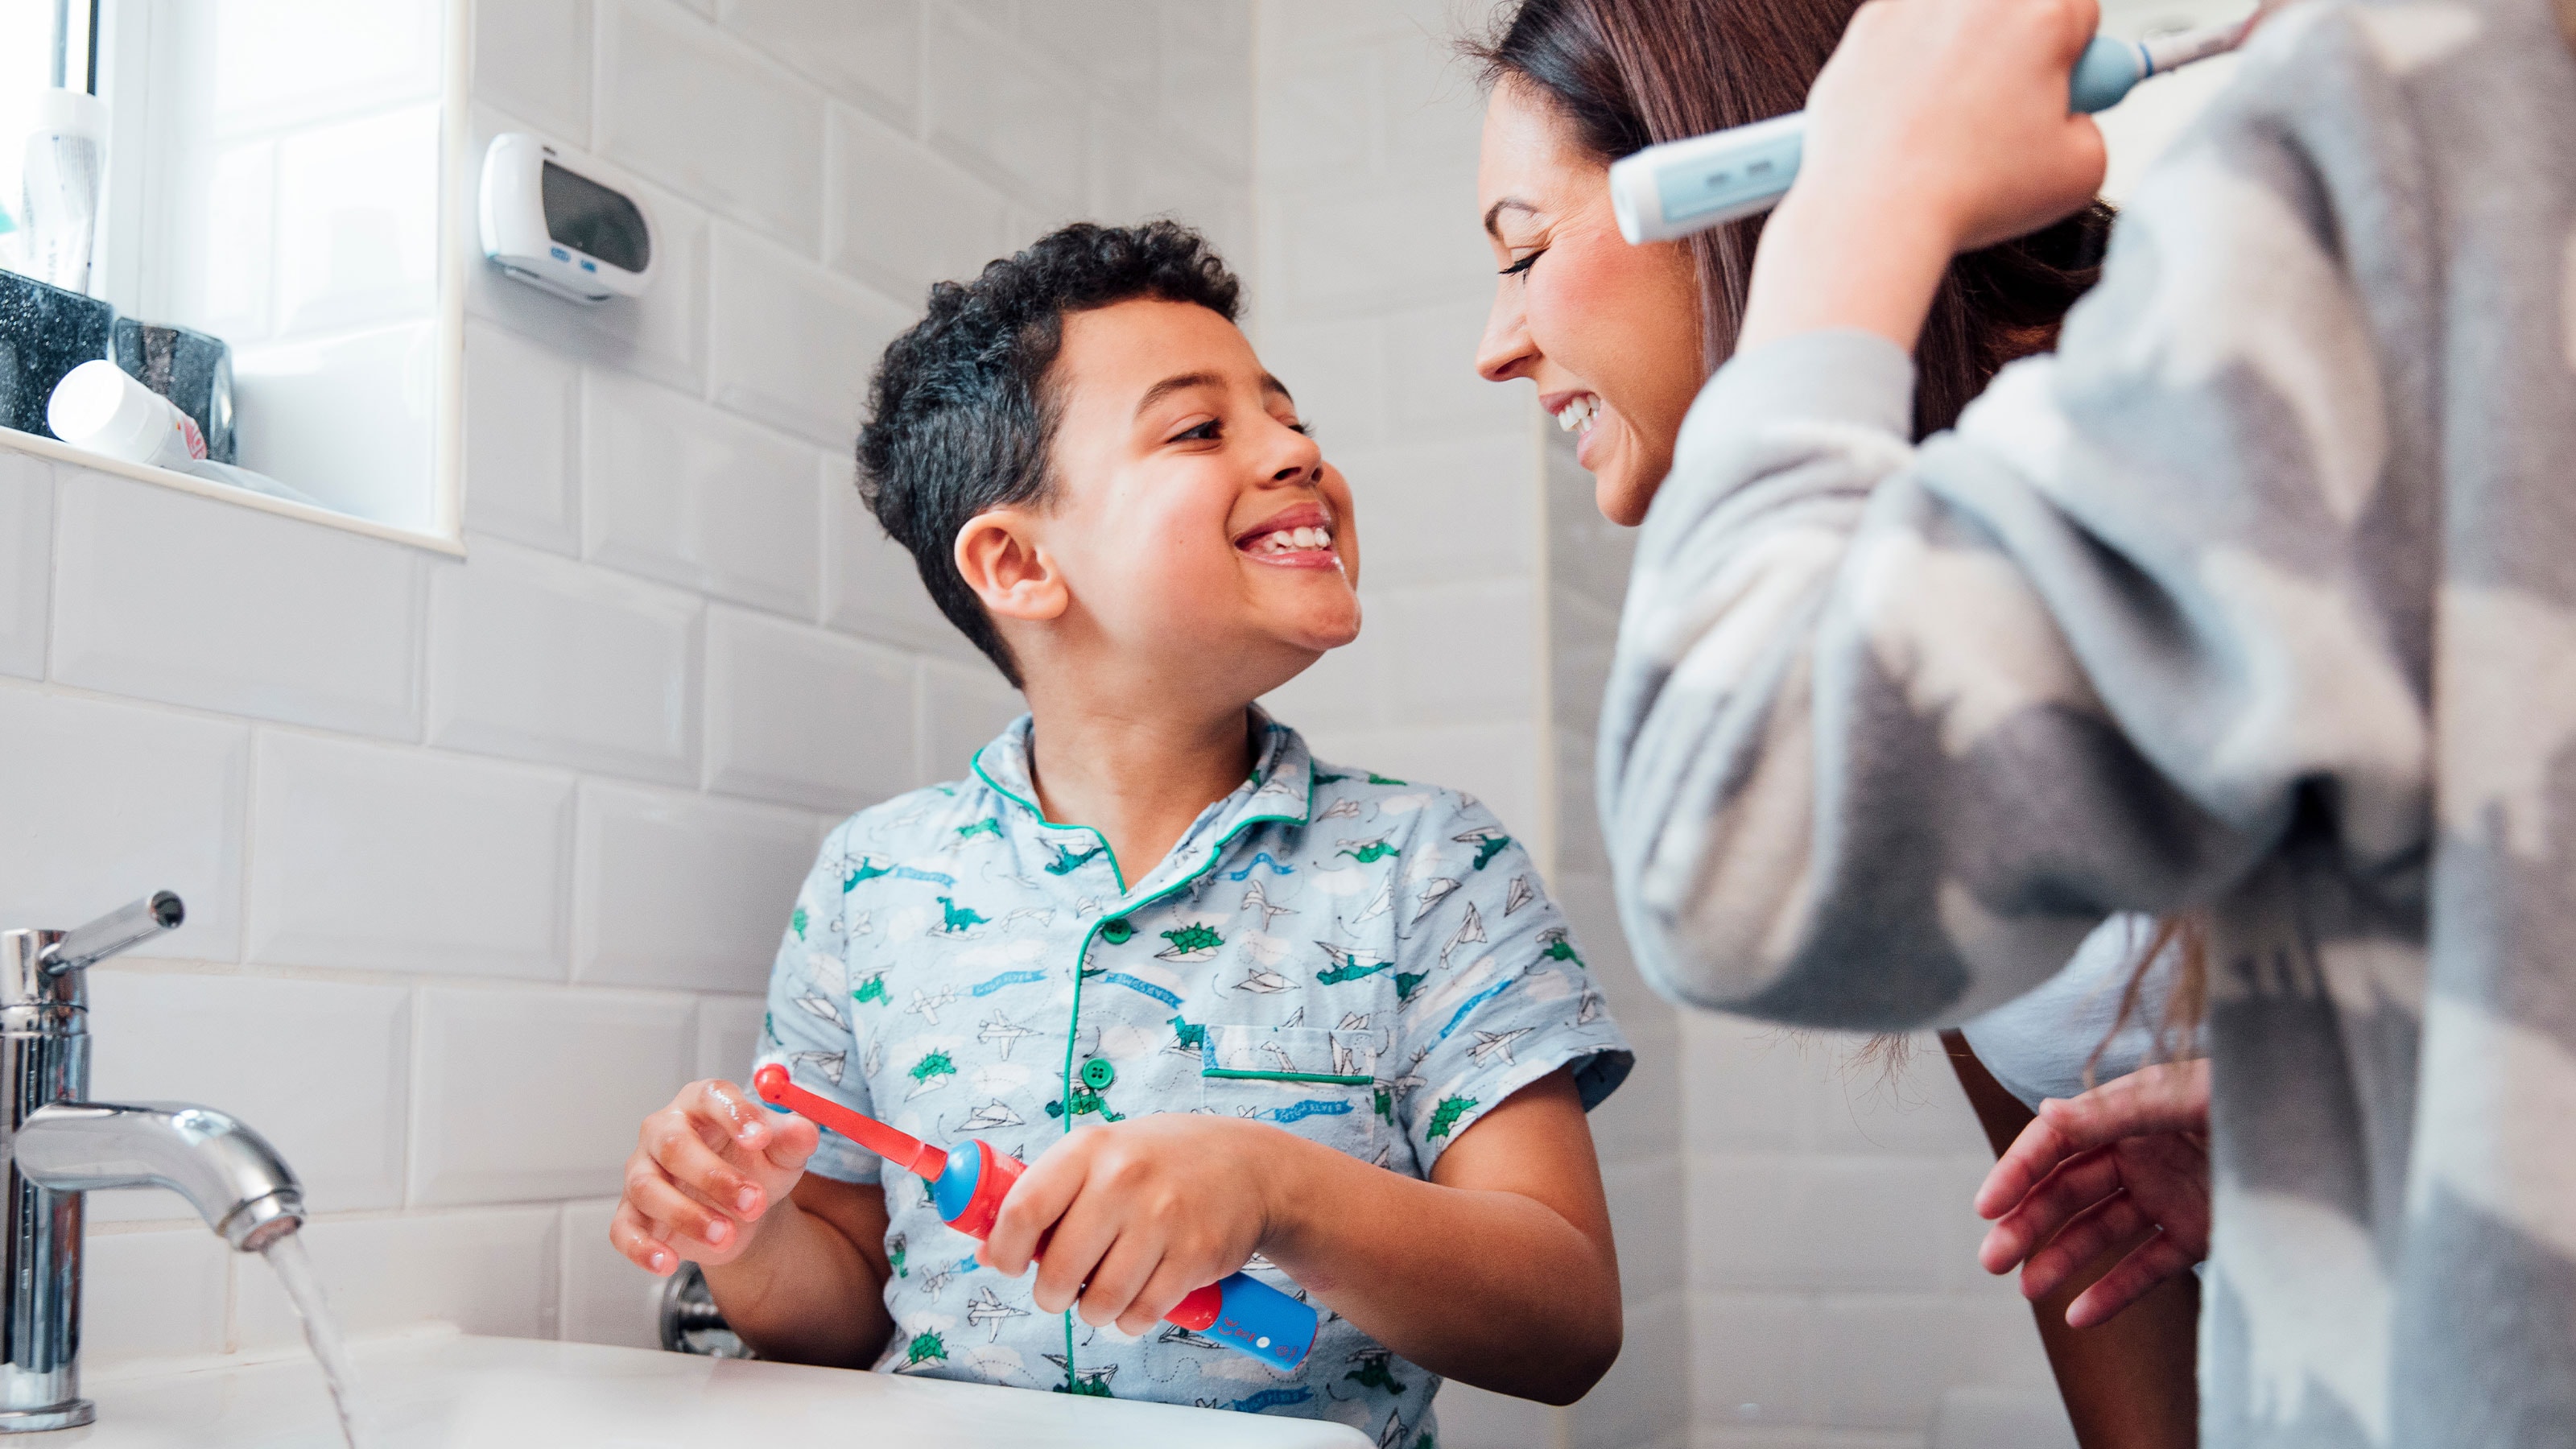 Guide: Finn riktig elektrisk tannbørste til barnet ditt | Elkjøp